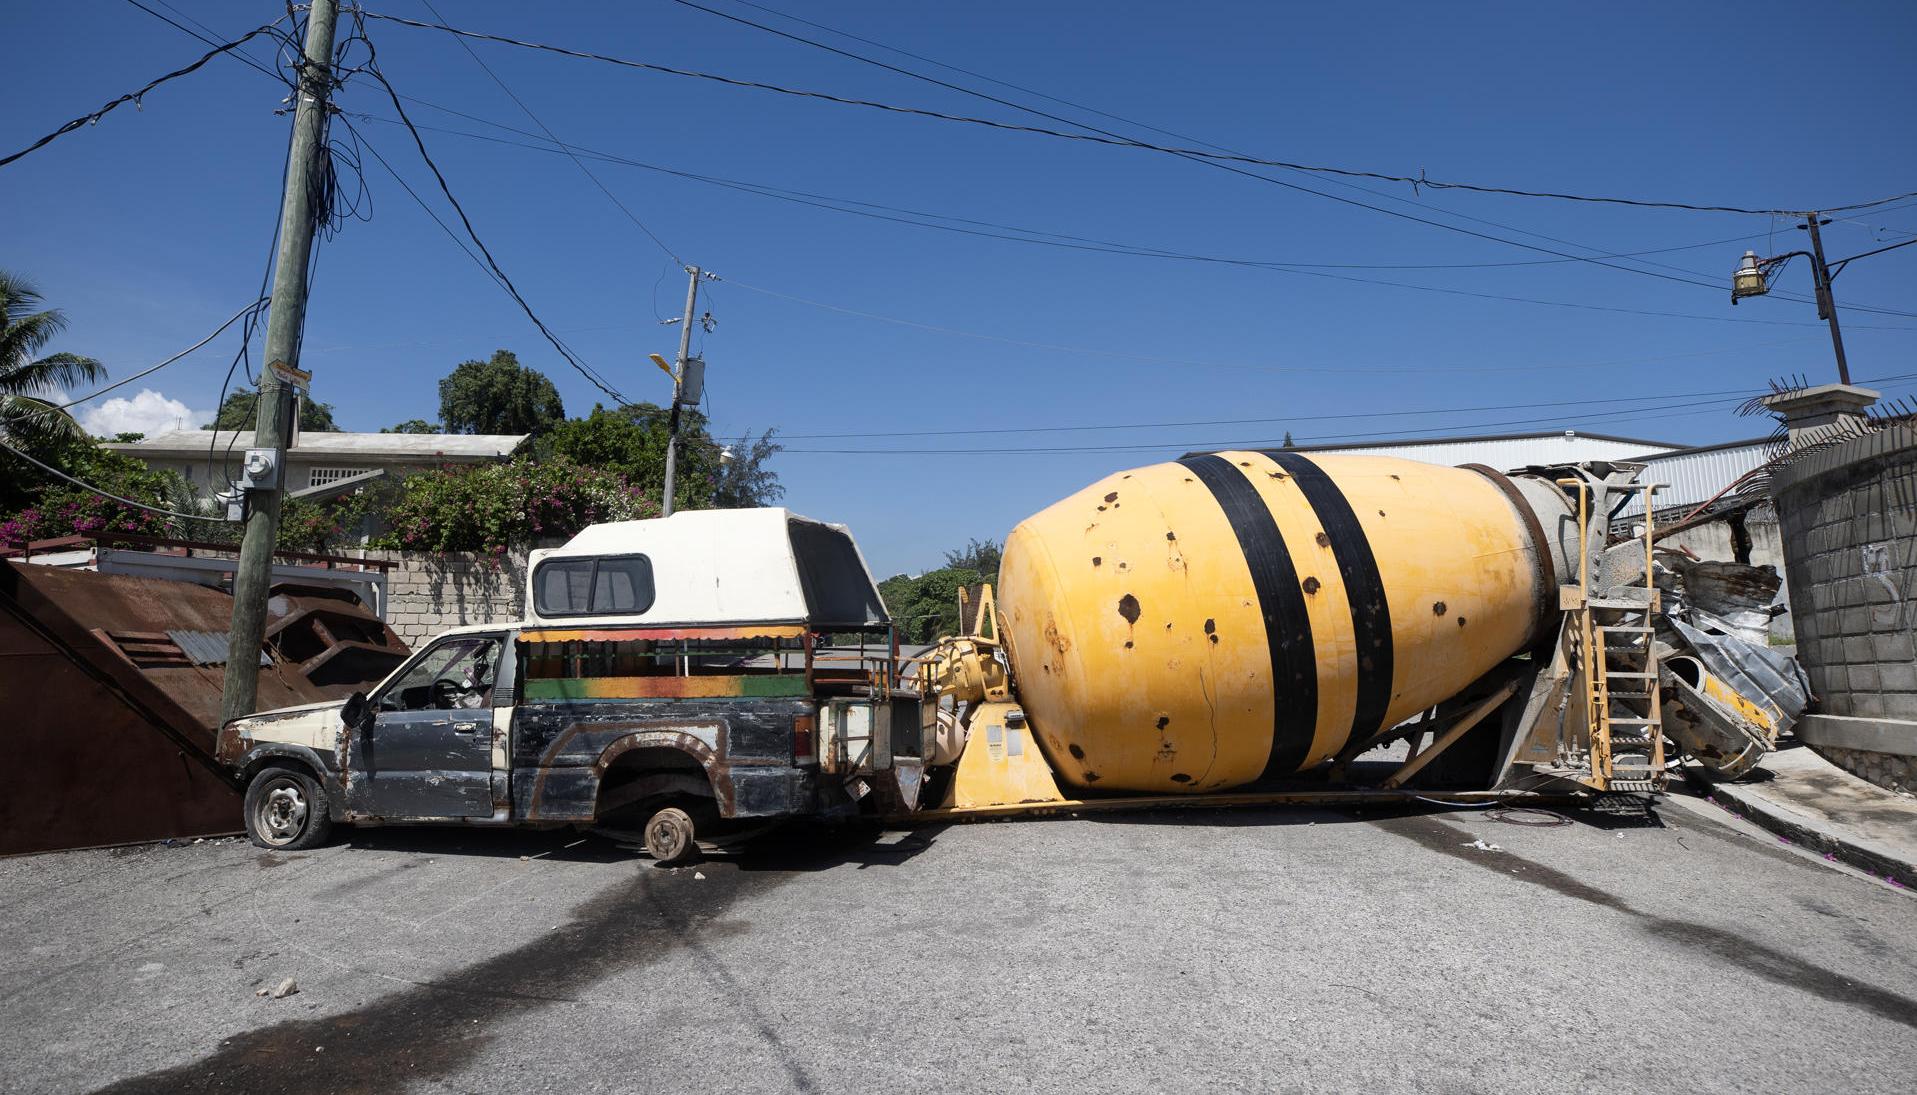 Los vecinos de Puerto Príncipe están bloqueando las vías para evitar el ingreso de las bandas